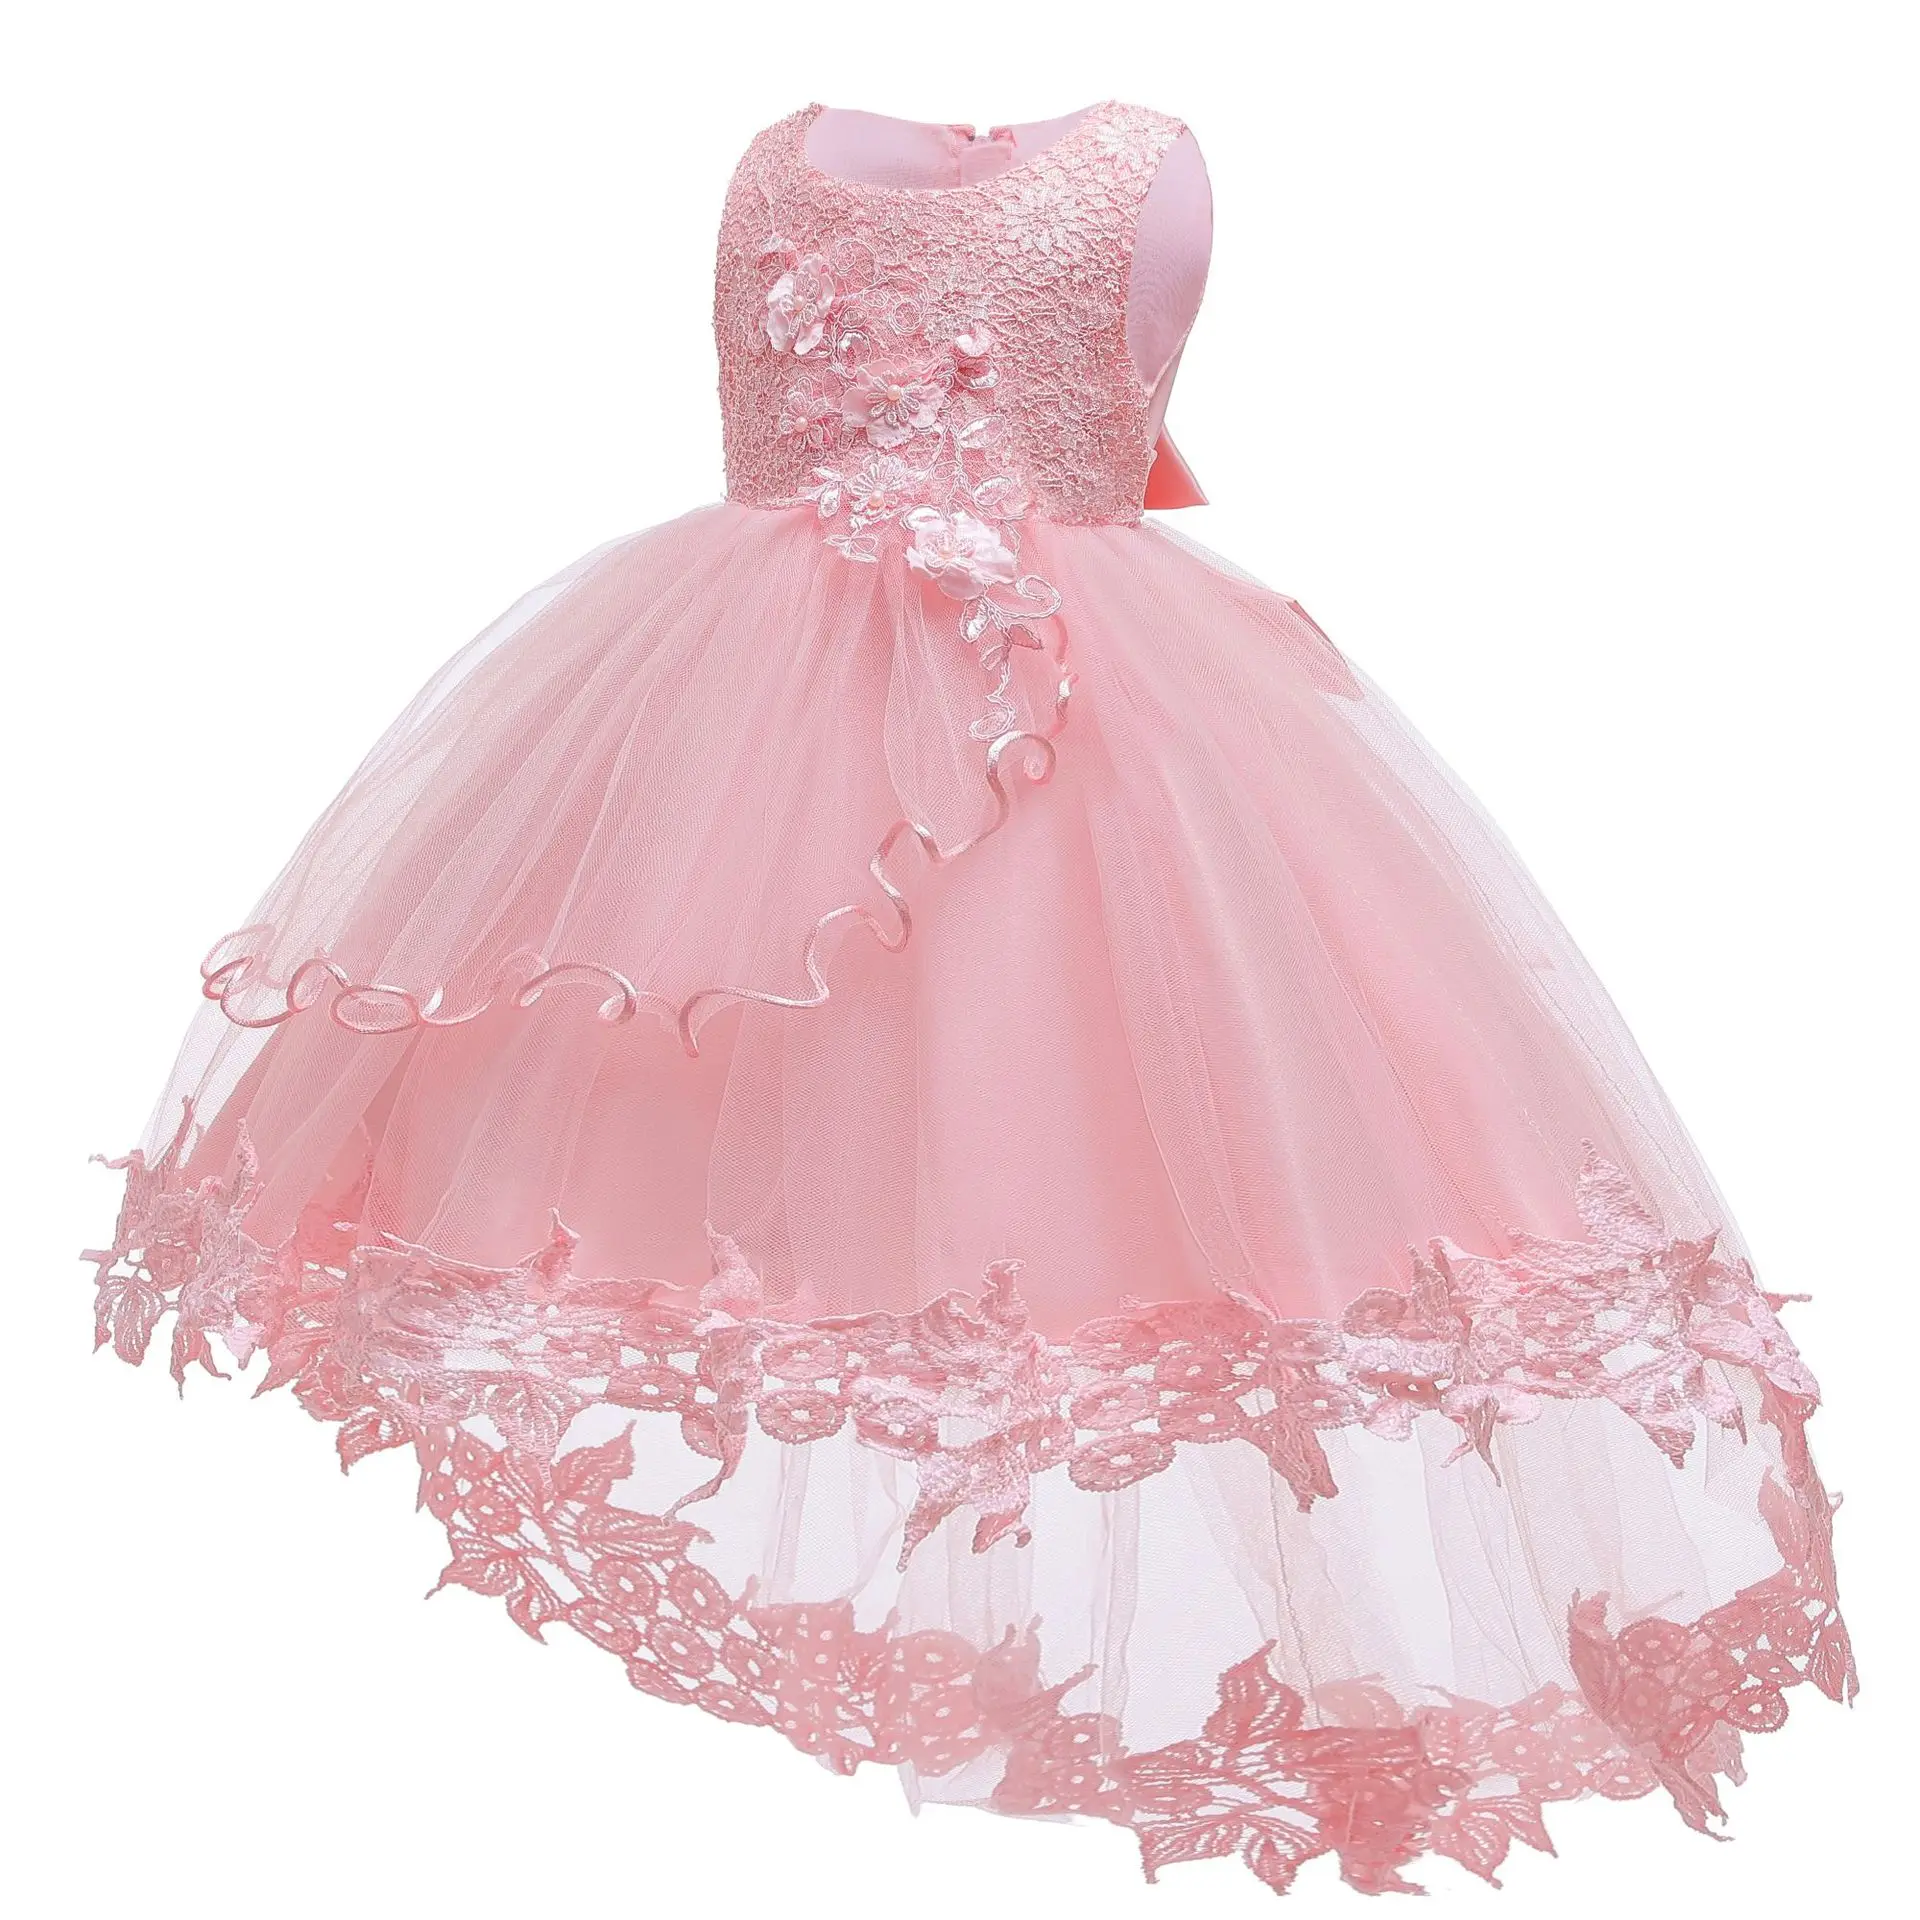 Vestido infantil/Детское платье для девочек; Рождественская Одежда для девочек; платье принцессы для первого дня рождения, свадьбы; одежда для детей 3, 6, 9 месяцев - Цвет: Pink